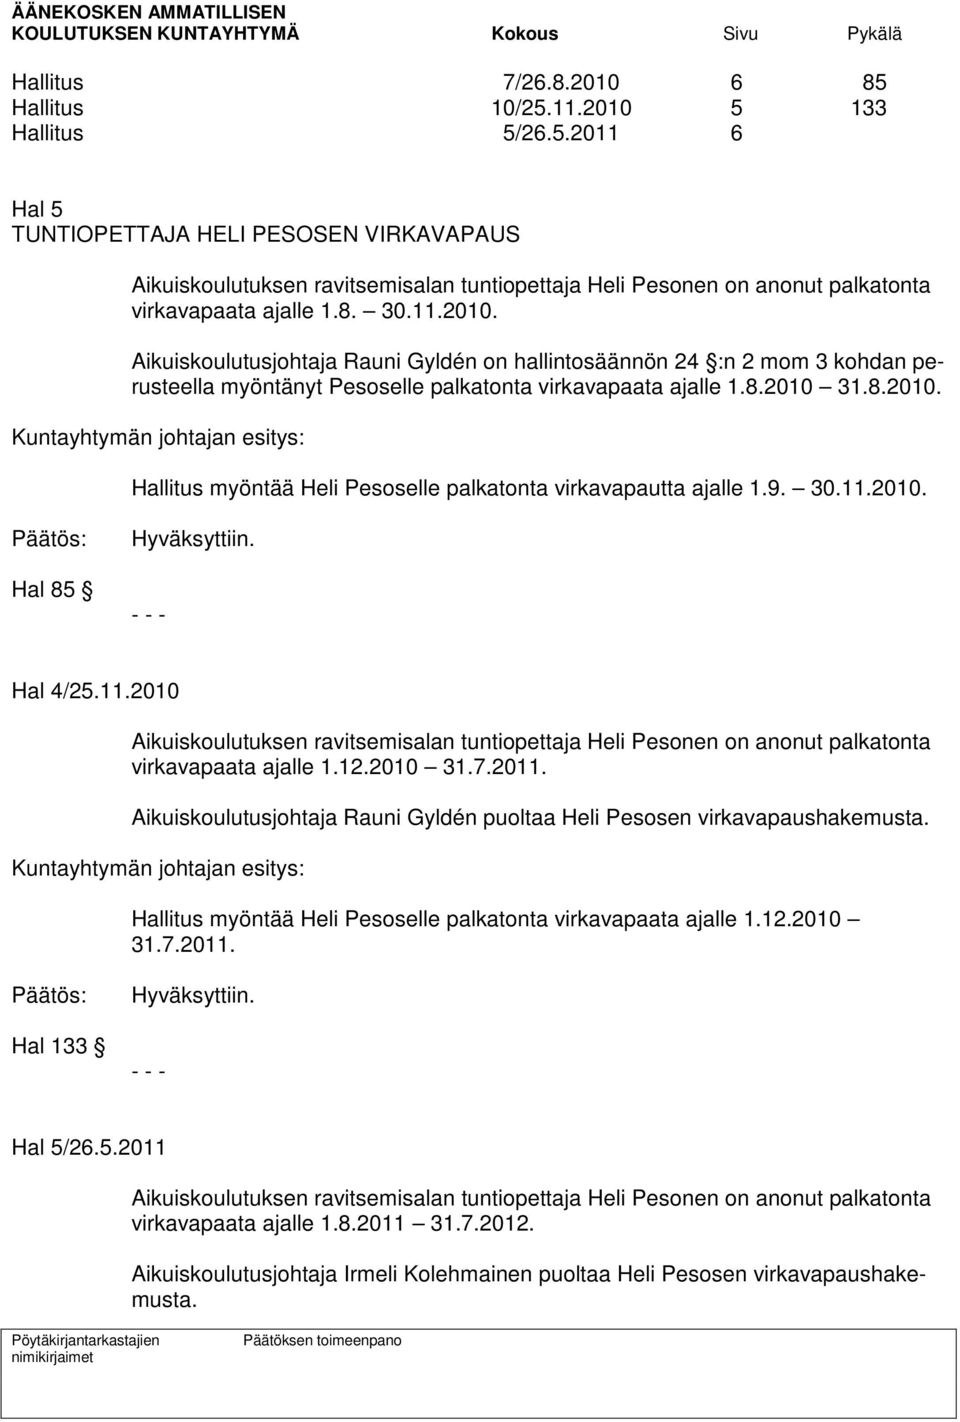 9. 30.11.2010. Päätös: Hal 85 Hyväksyttiin. - - - Hal 4/25.11.2010 Aikuiskoulutuksen ravitsemisalan tuntiopettaja Heli Pesonen on anonut palkatonta virkavapaata ajalle 1.12.2010 31.7.2011.